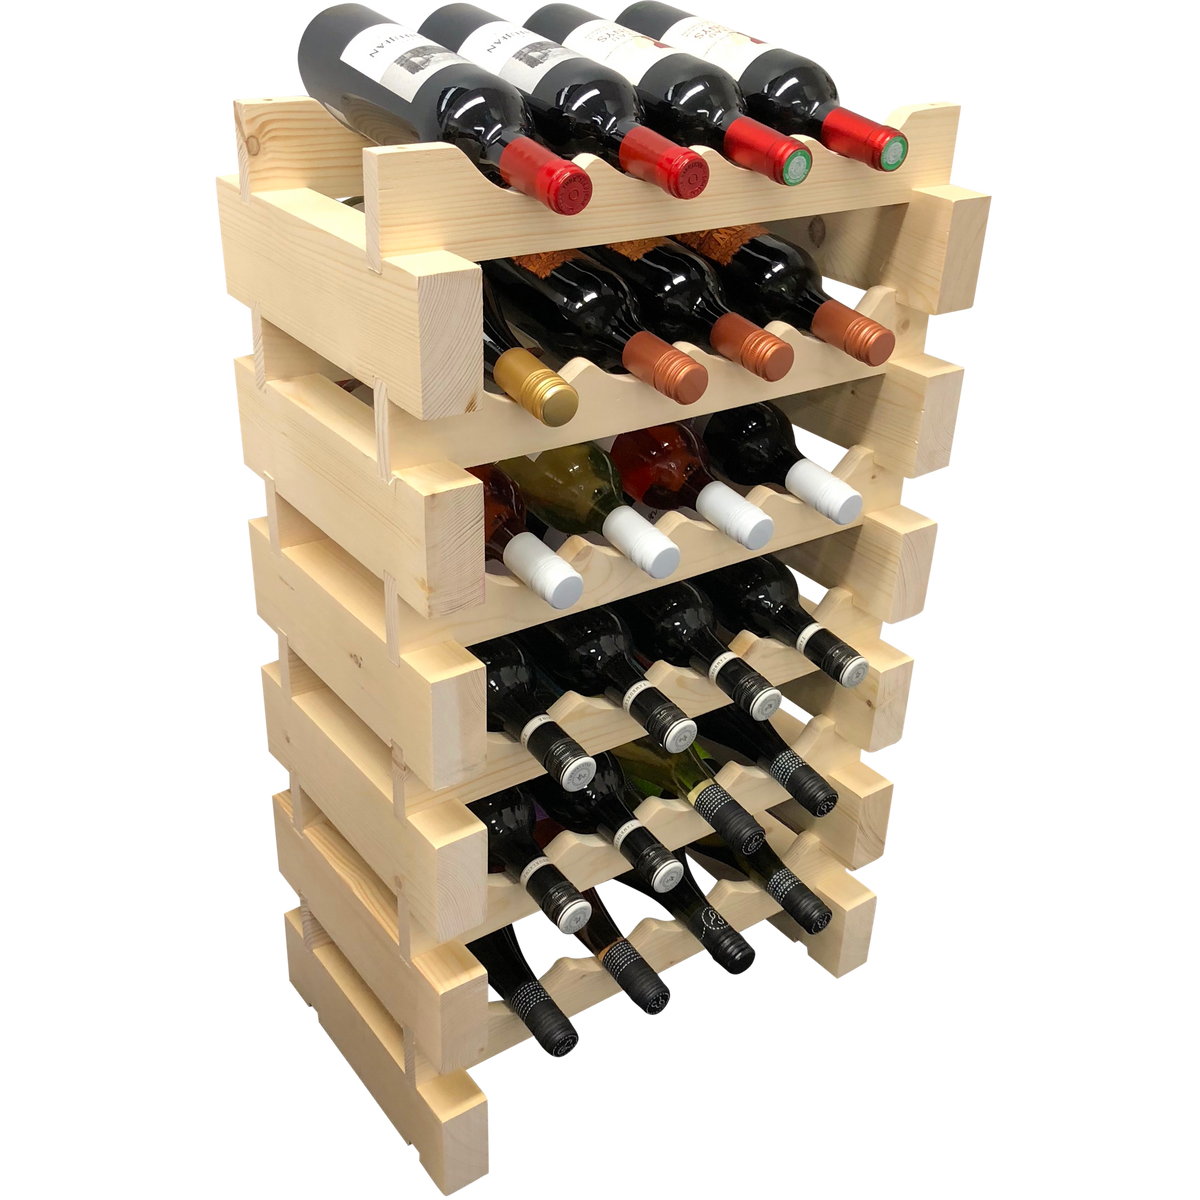 24 Bottle Modular Wine Rack Kit (4 Bottles Wide X 6 Bottles High) - Wine Stash USA